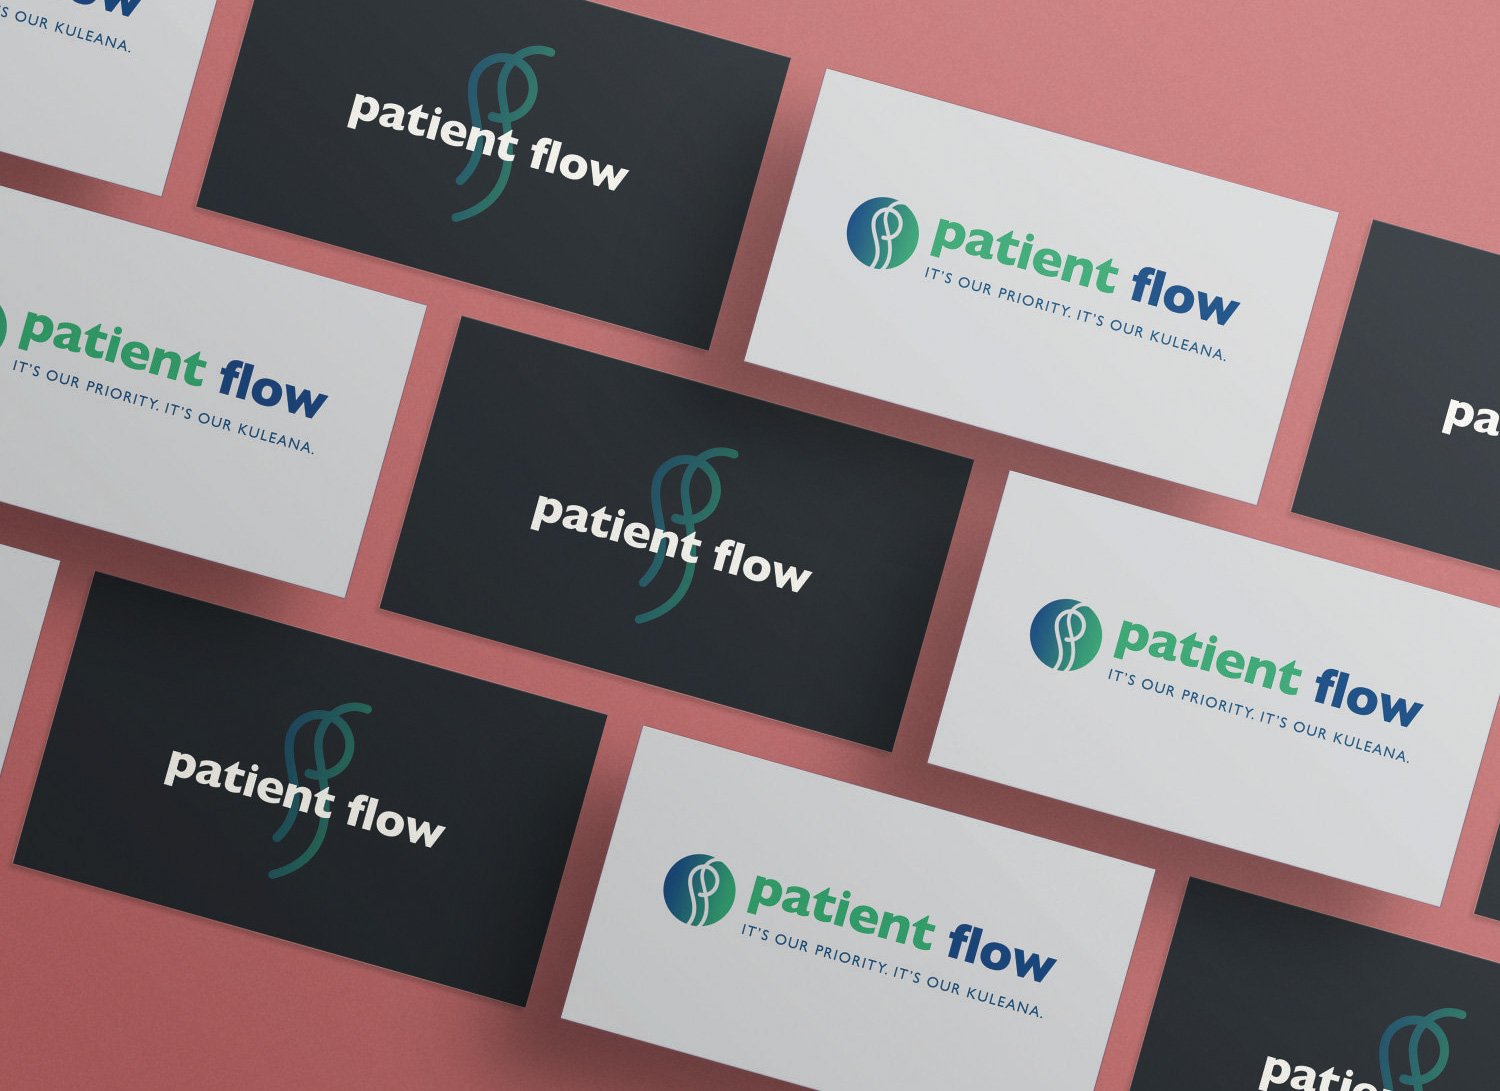 PatientFlow_cards.jpg